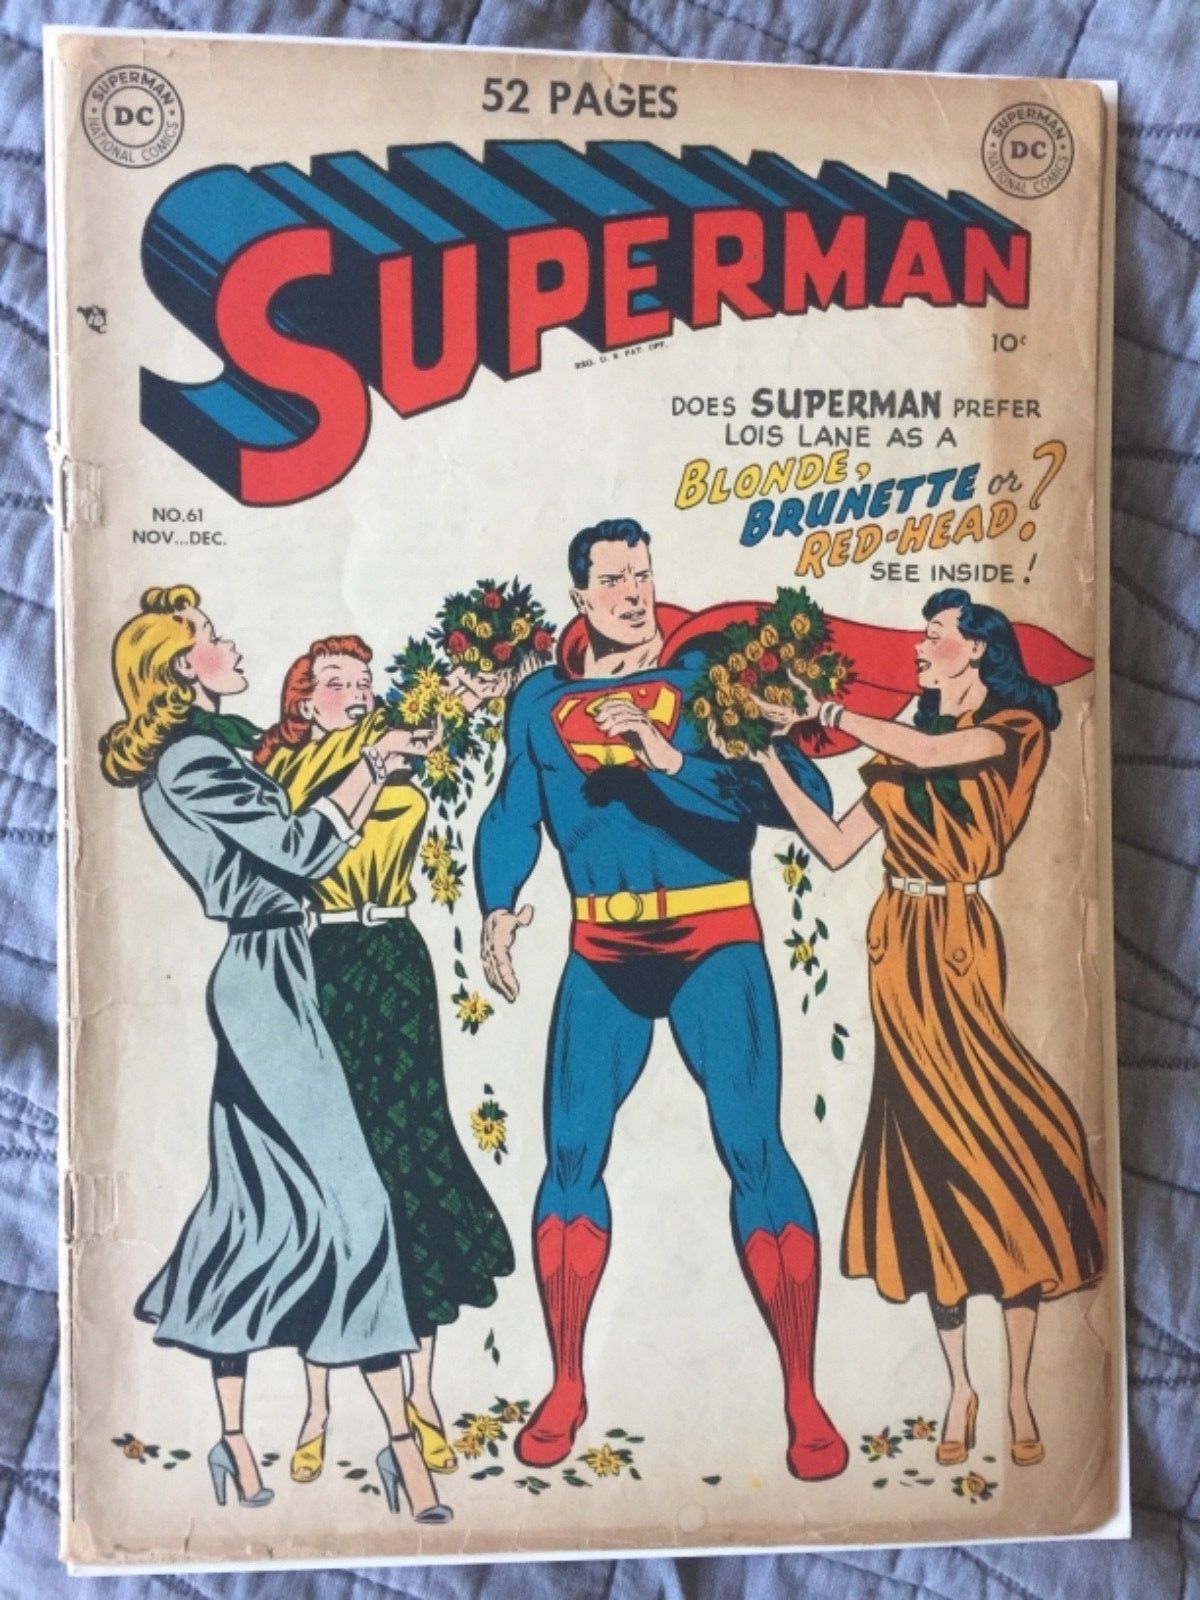 RARE 1949 GOLDEN AGE SUPERMAN #61 KEY ORIGIN RETOLD CLASSIC COVER COMPLETE